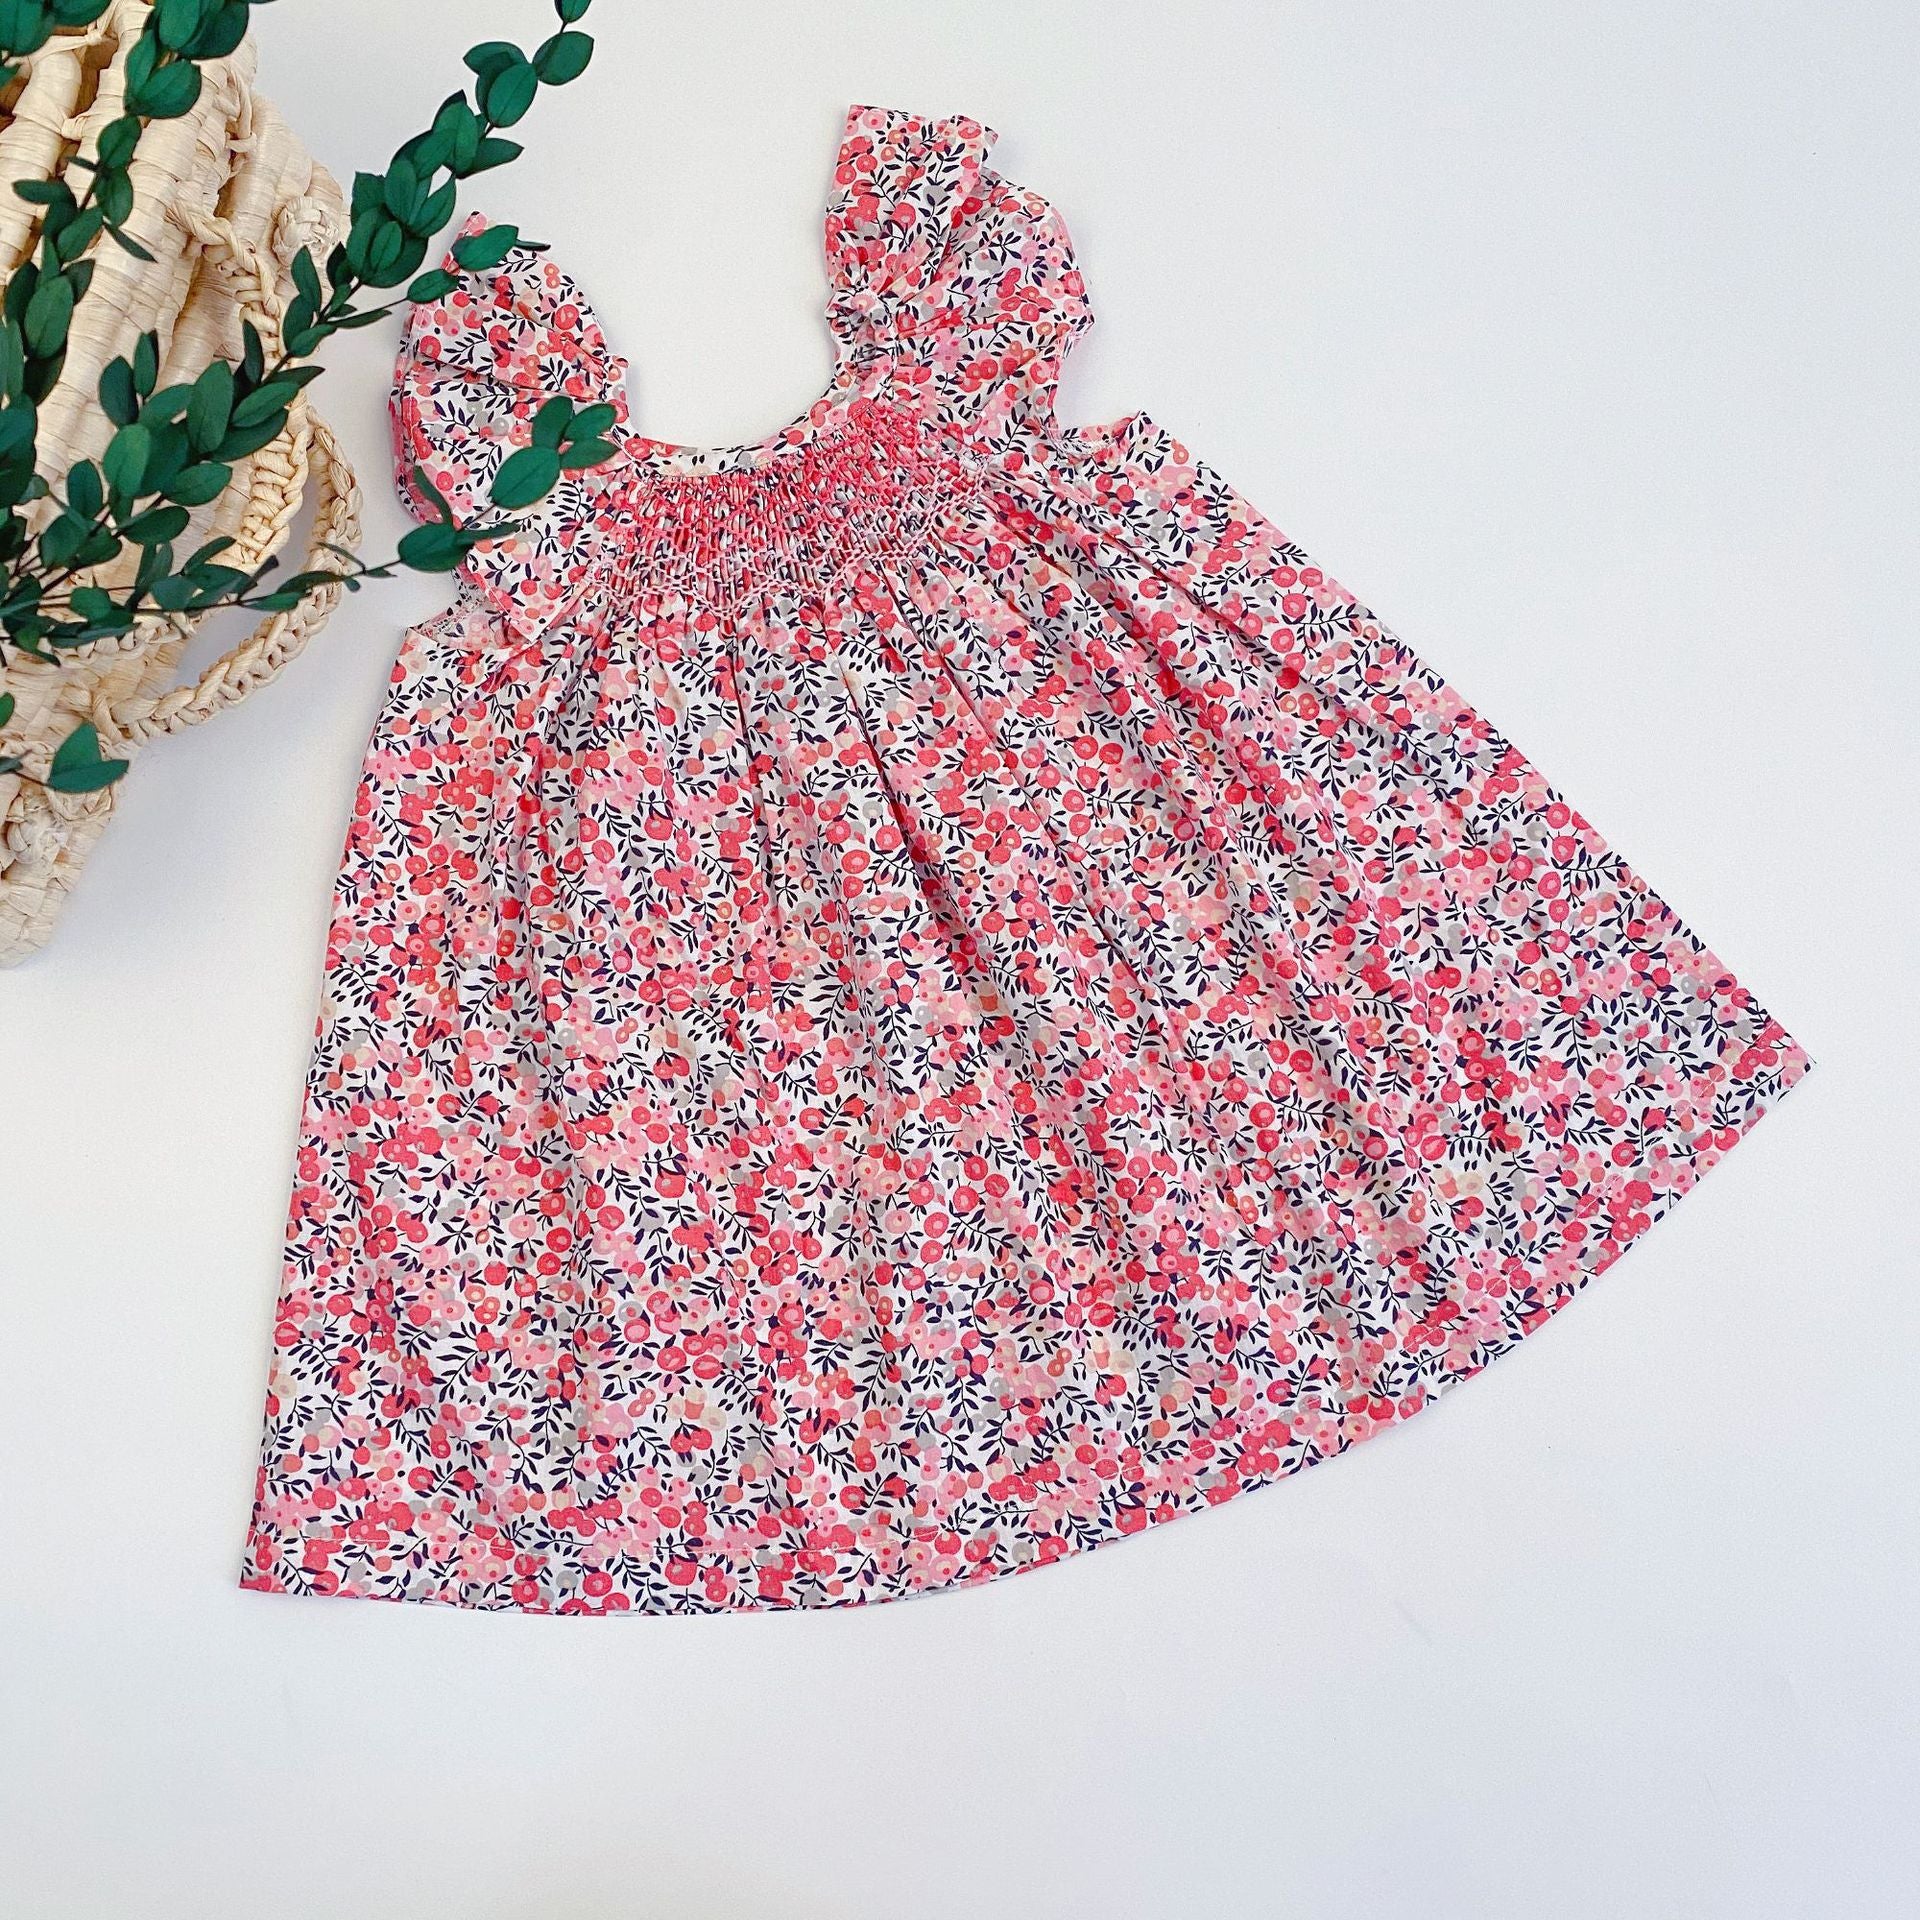 Fashion Children's Cherry Floral Dress